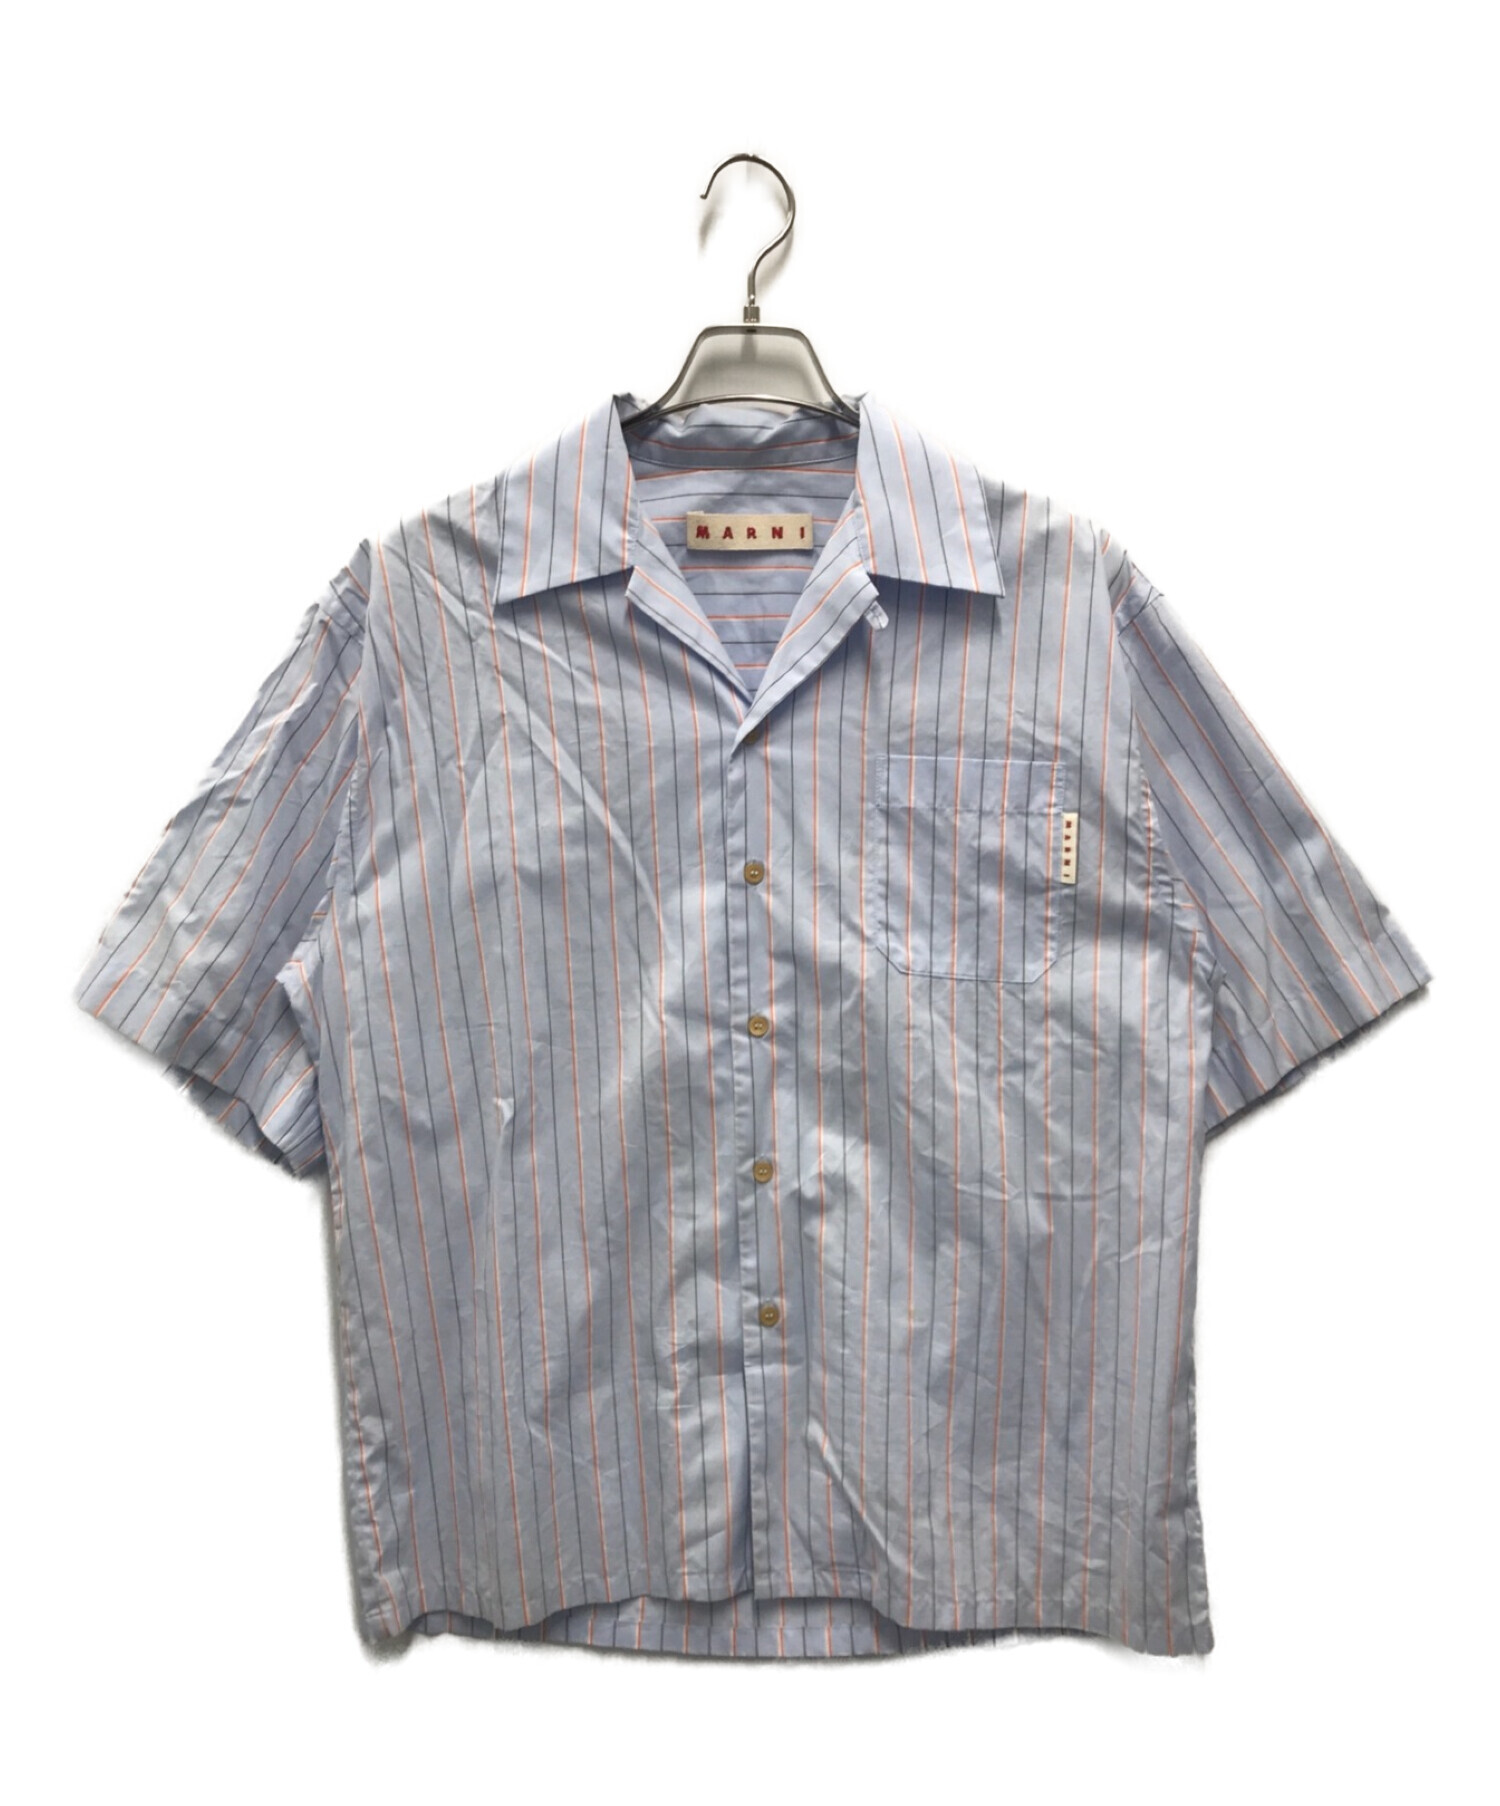 MARNI (マルニ) オーガニックコットンポプリンストライプオープンカラーS/Sシャツ ブルー サイズ:46